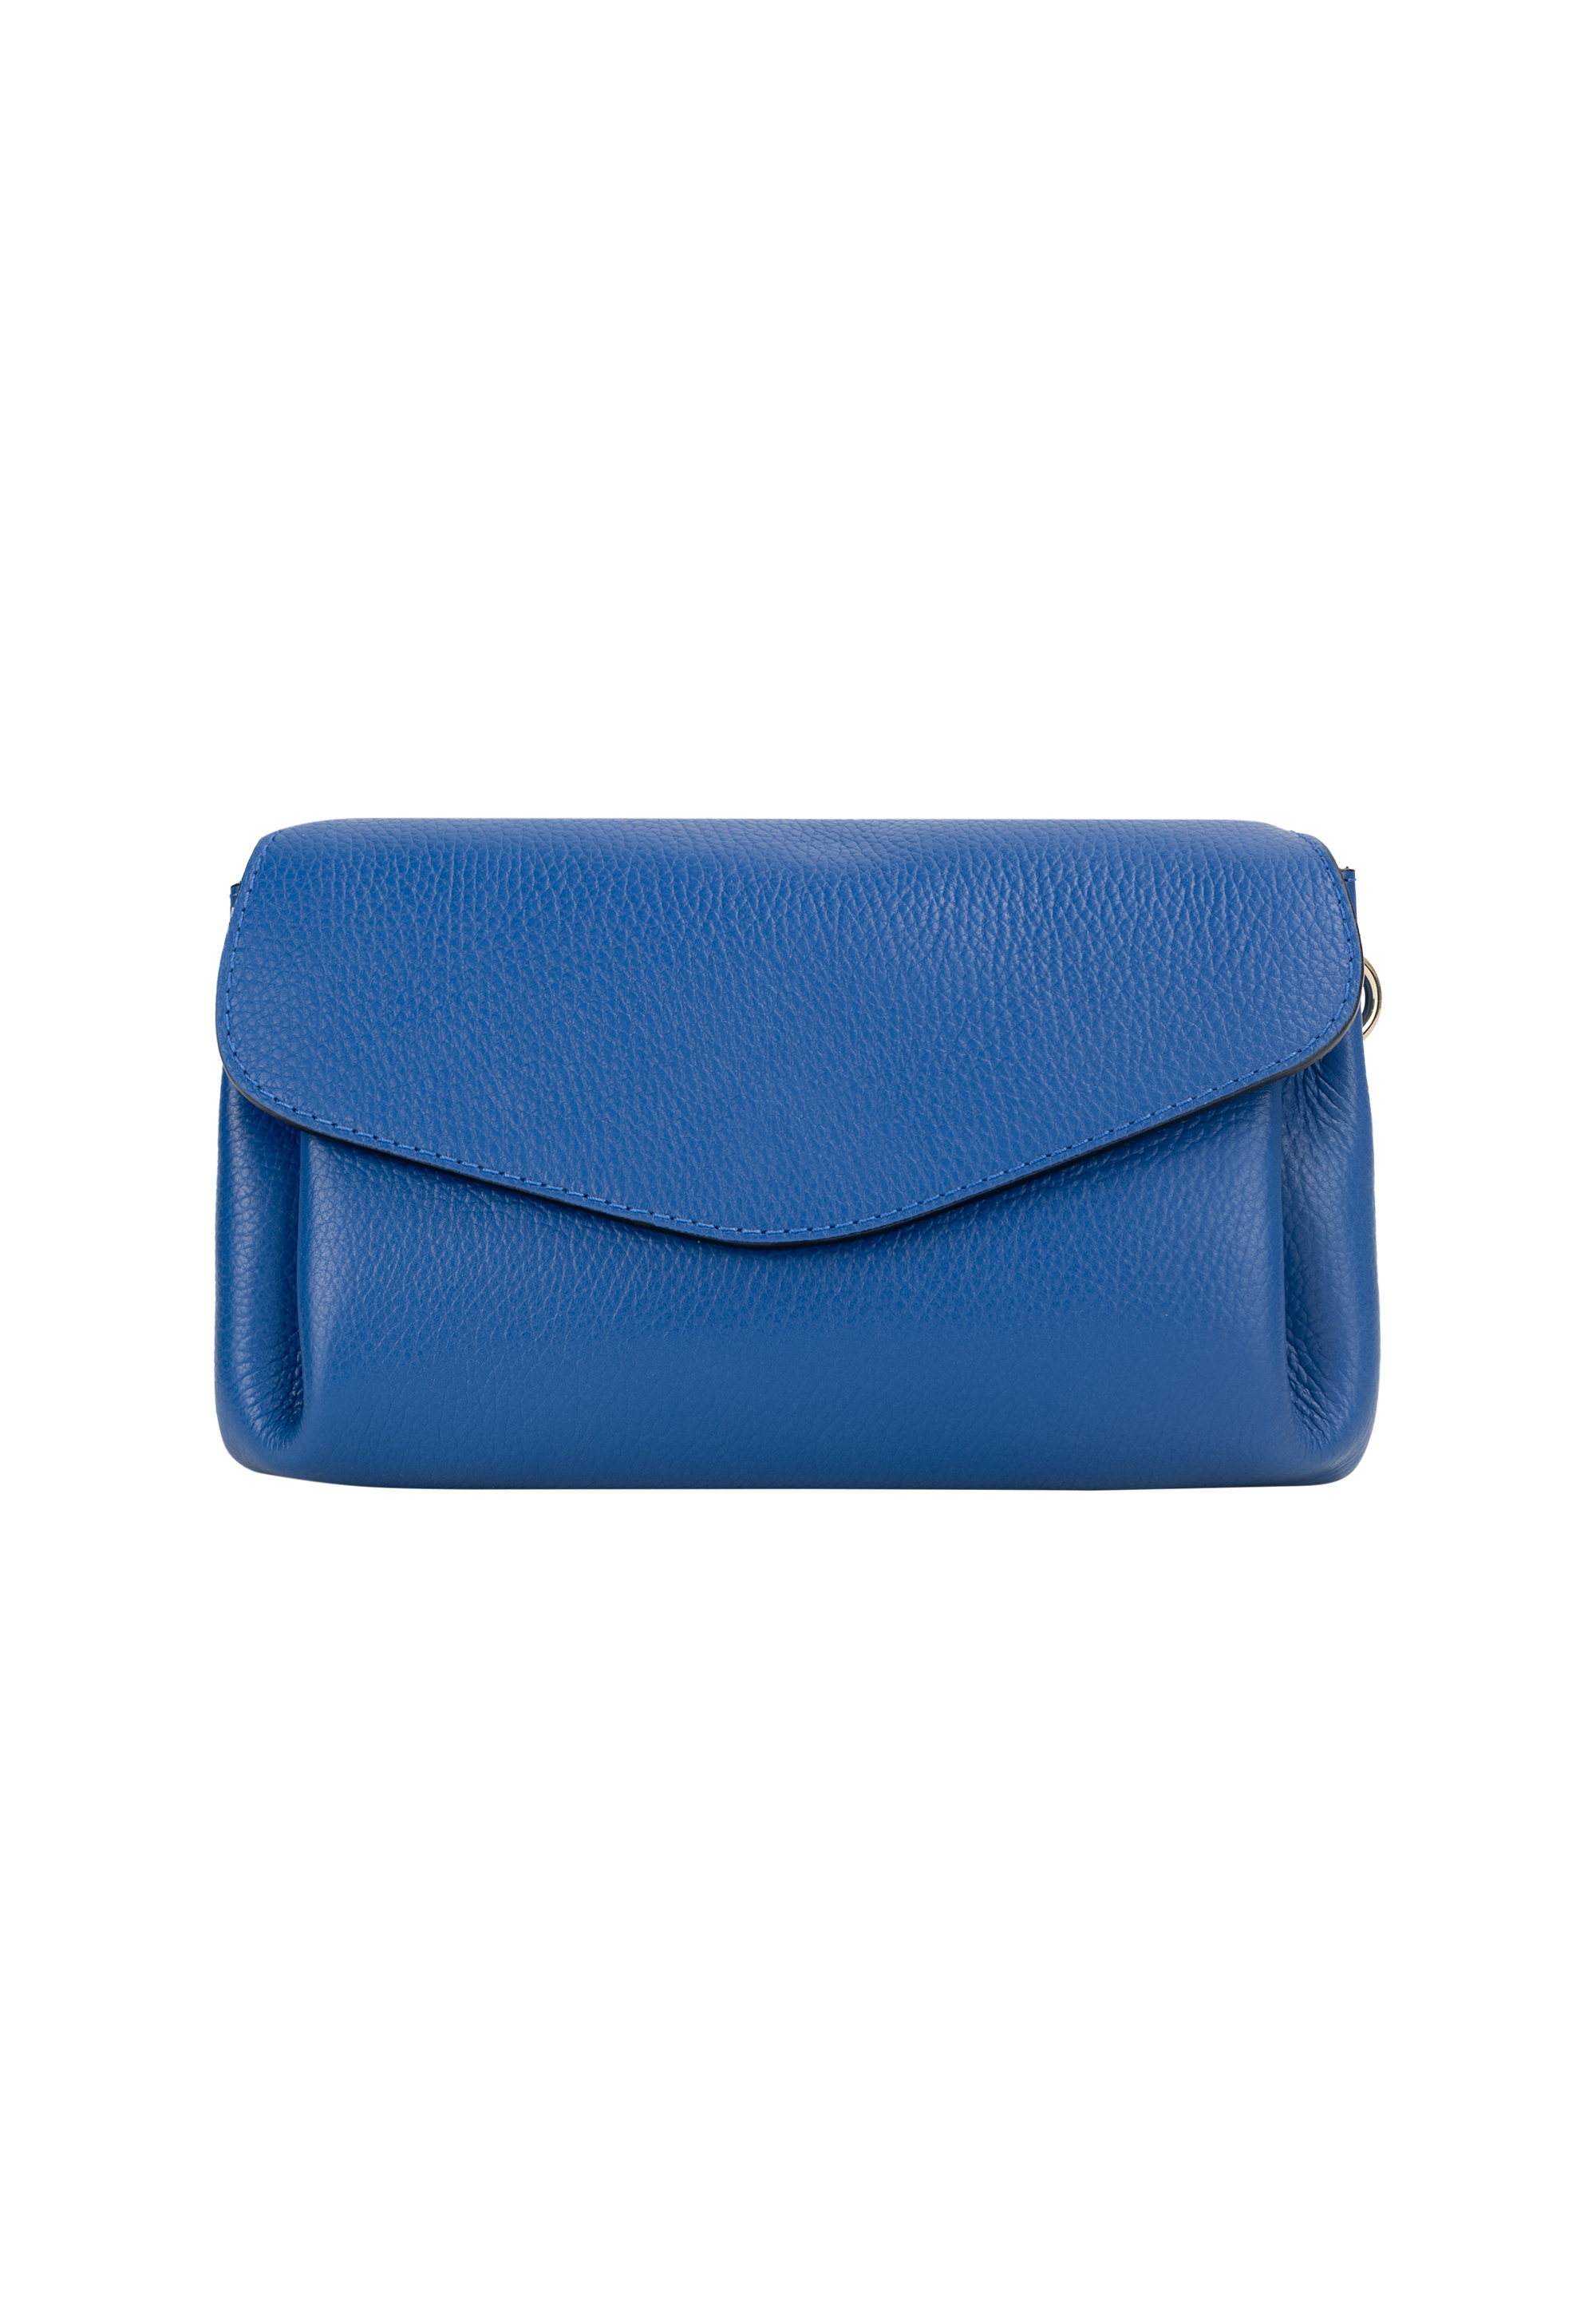 Сумка через плечо NAEMI Handtasche, цвет Azurblau сумка через плечо naemi handtasche цвет cappuccino